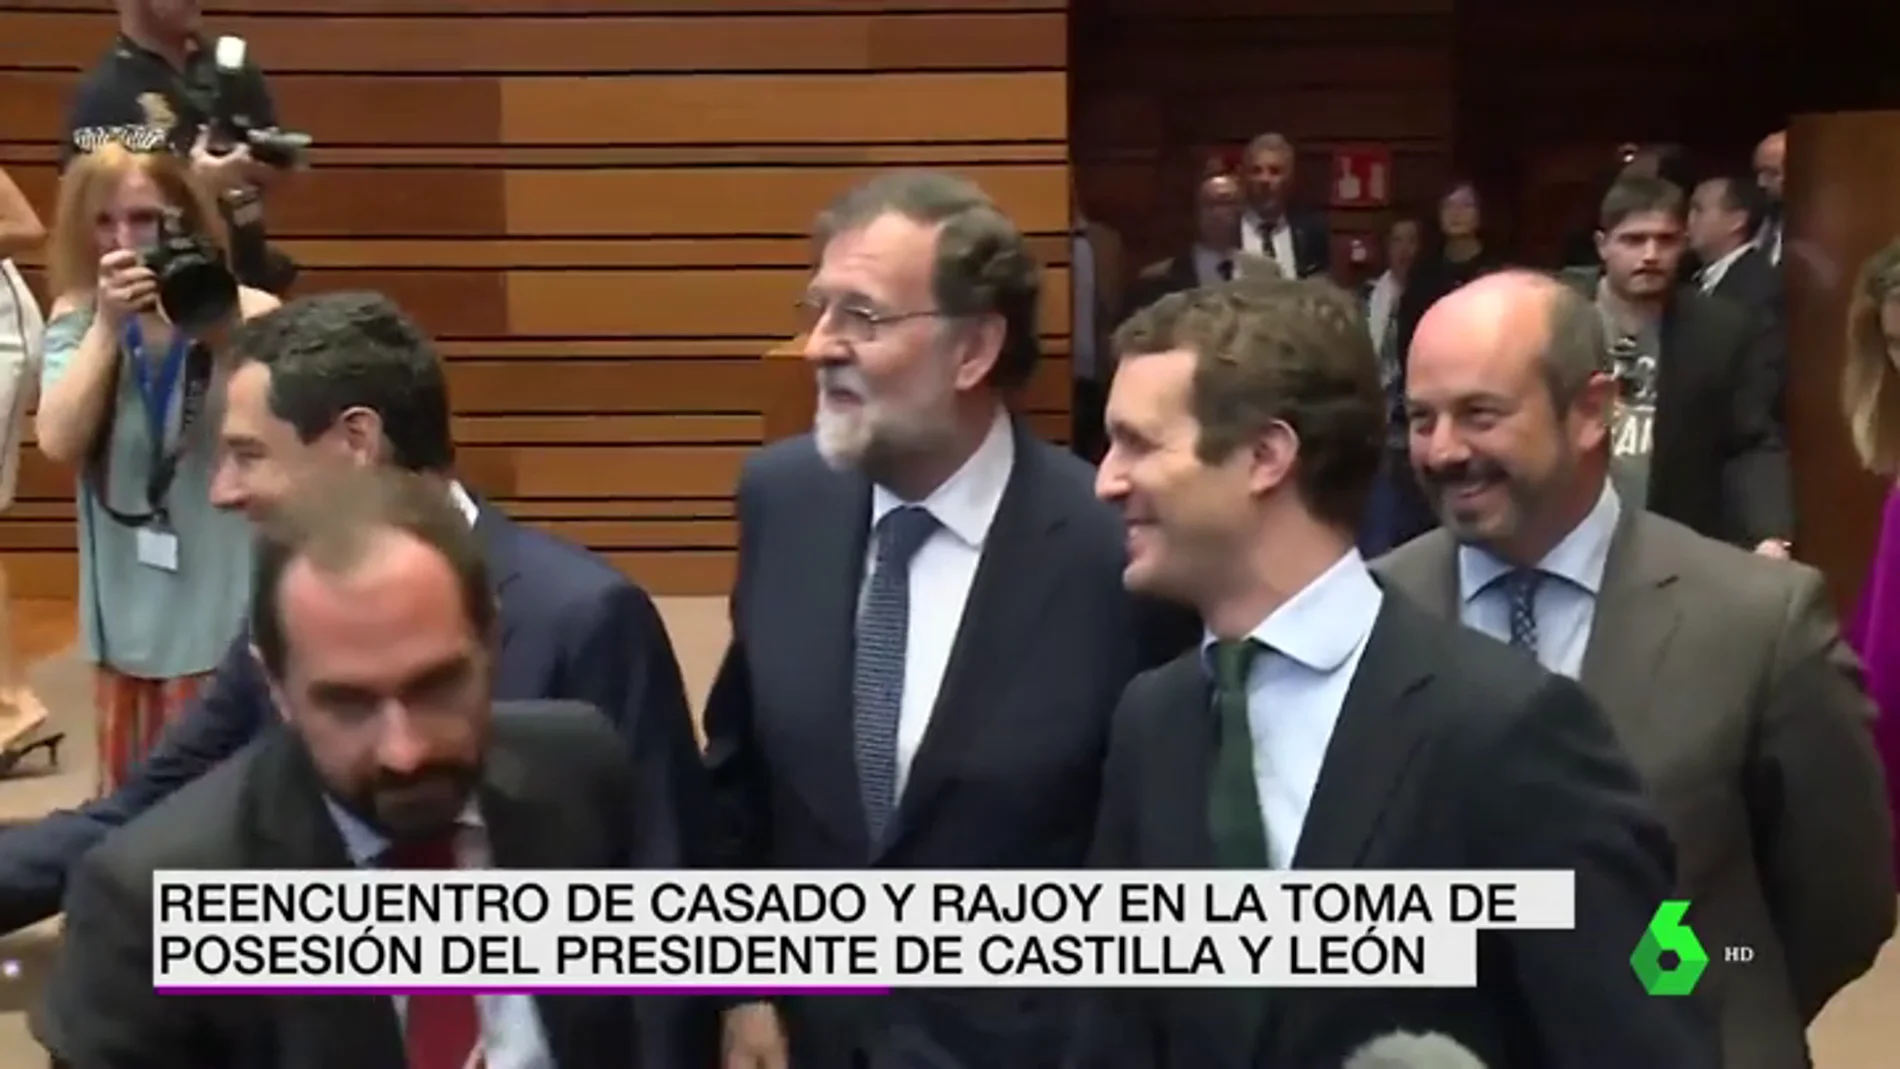 Reencuentro entre Casado y Rajoy en la toma de posesión del presidente de Castilla y León